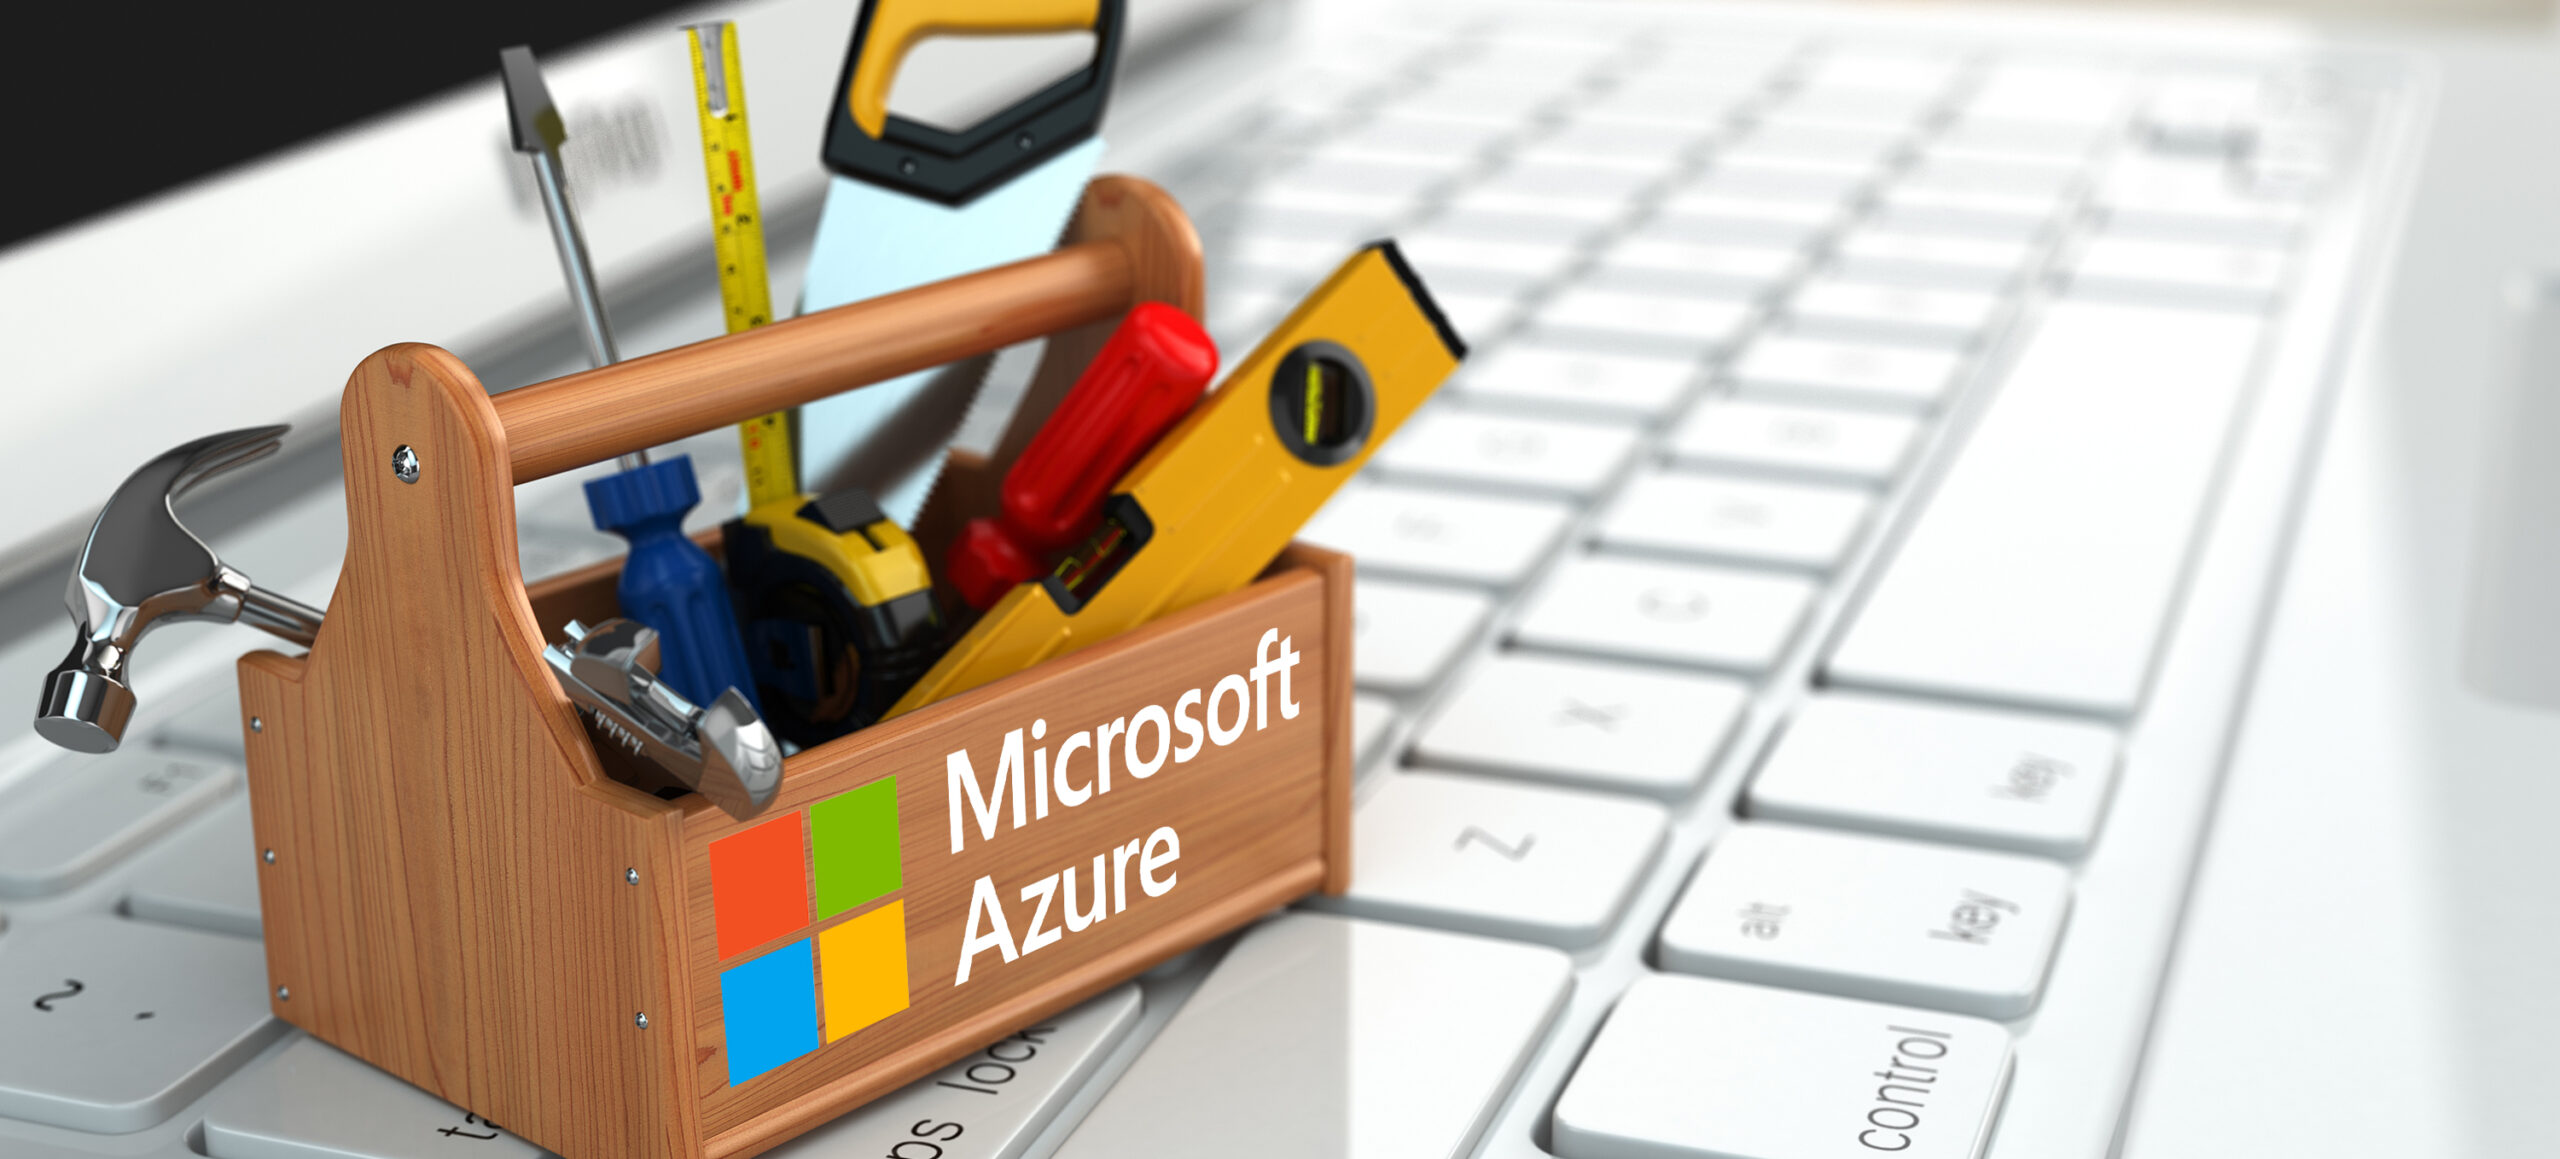 Microsoft Azure, ein leistungsstarker Toolbox für Sicherheit und Compliance